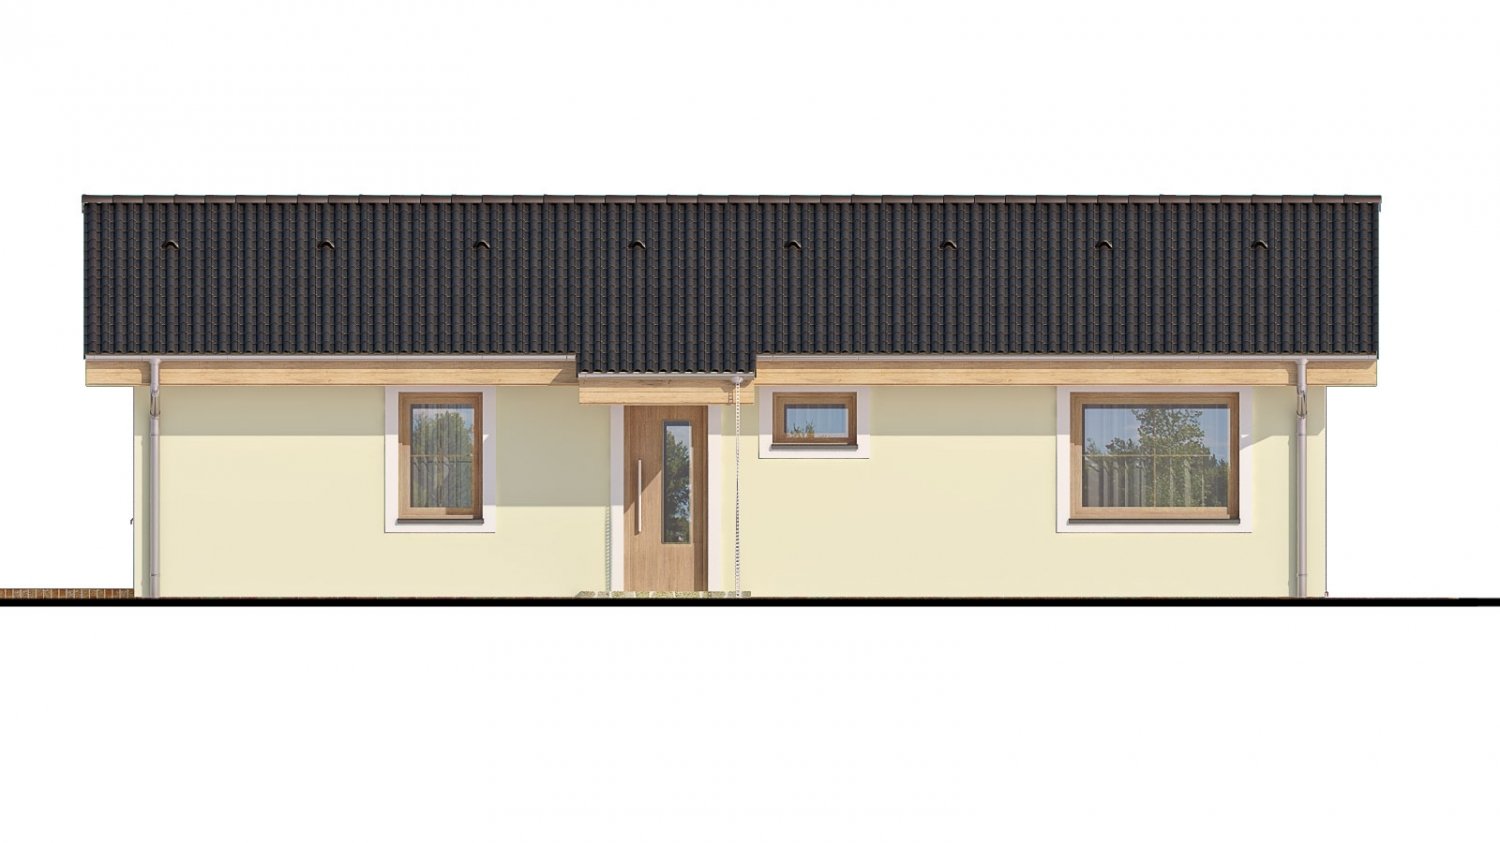 Pohľad 1. - Zděný projekt rodinného domu na úzký pozemek se sedlovou střechou. Zpracovaný v 3d realitě s umístěním na pozemek.